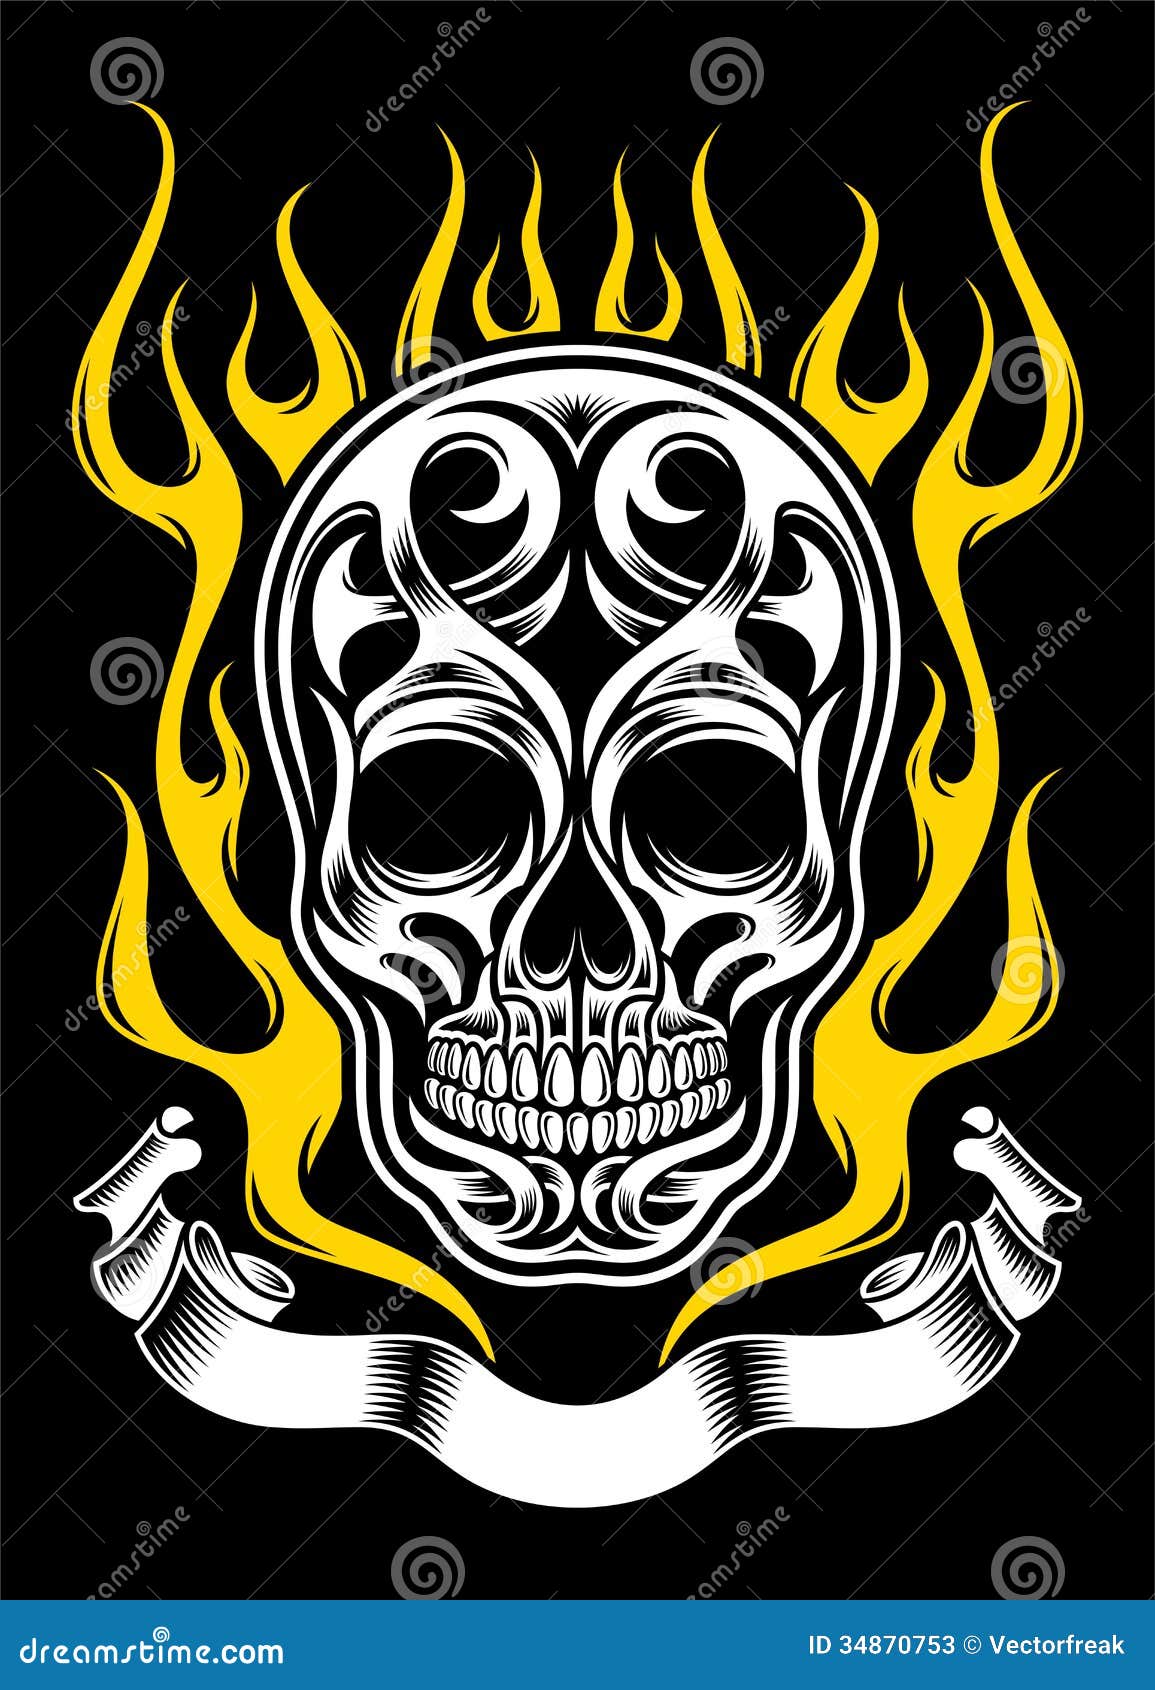 Flaming Skull Tattoo Design Idea  Skull and rose drawing Owl tattoo design  Skulls drawing